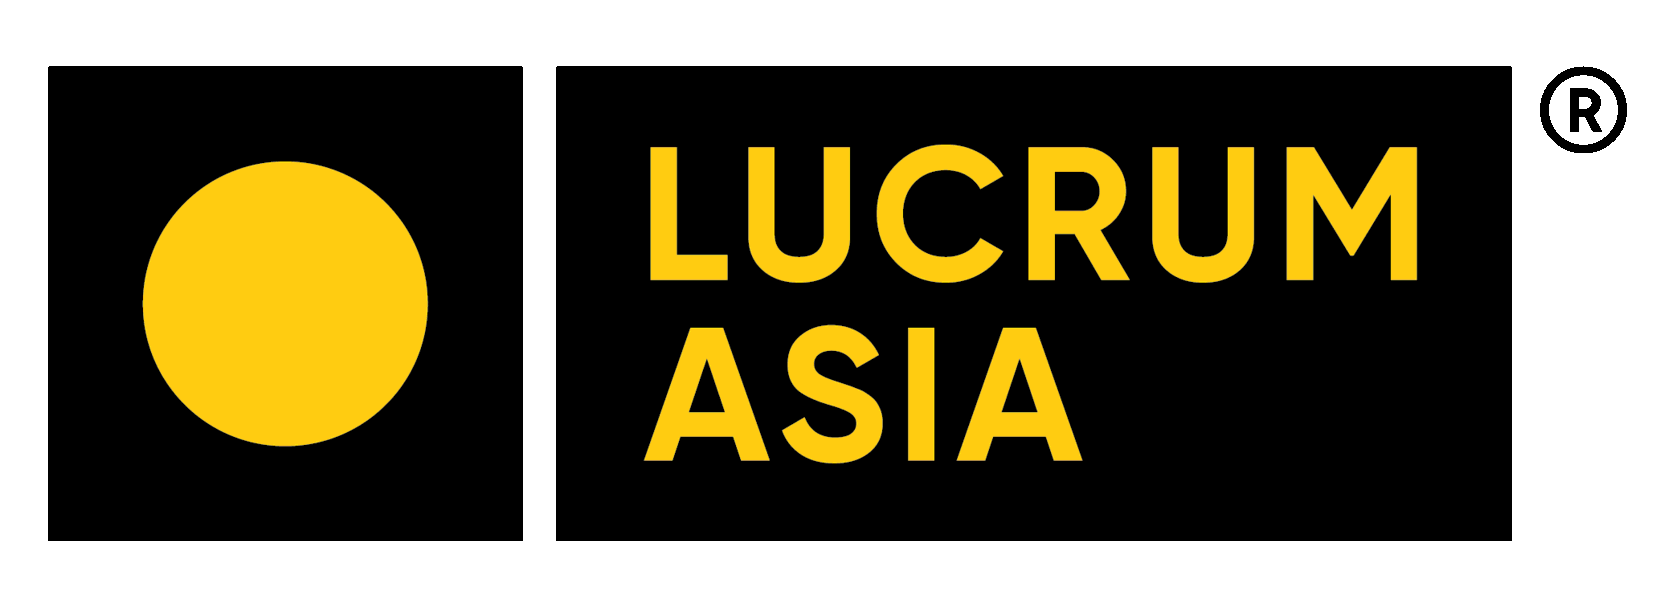  Lucrum Asia предоставляет услуги в сфере быстрого ремонта и восстановления конвейерной ленты